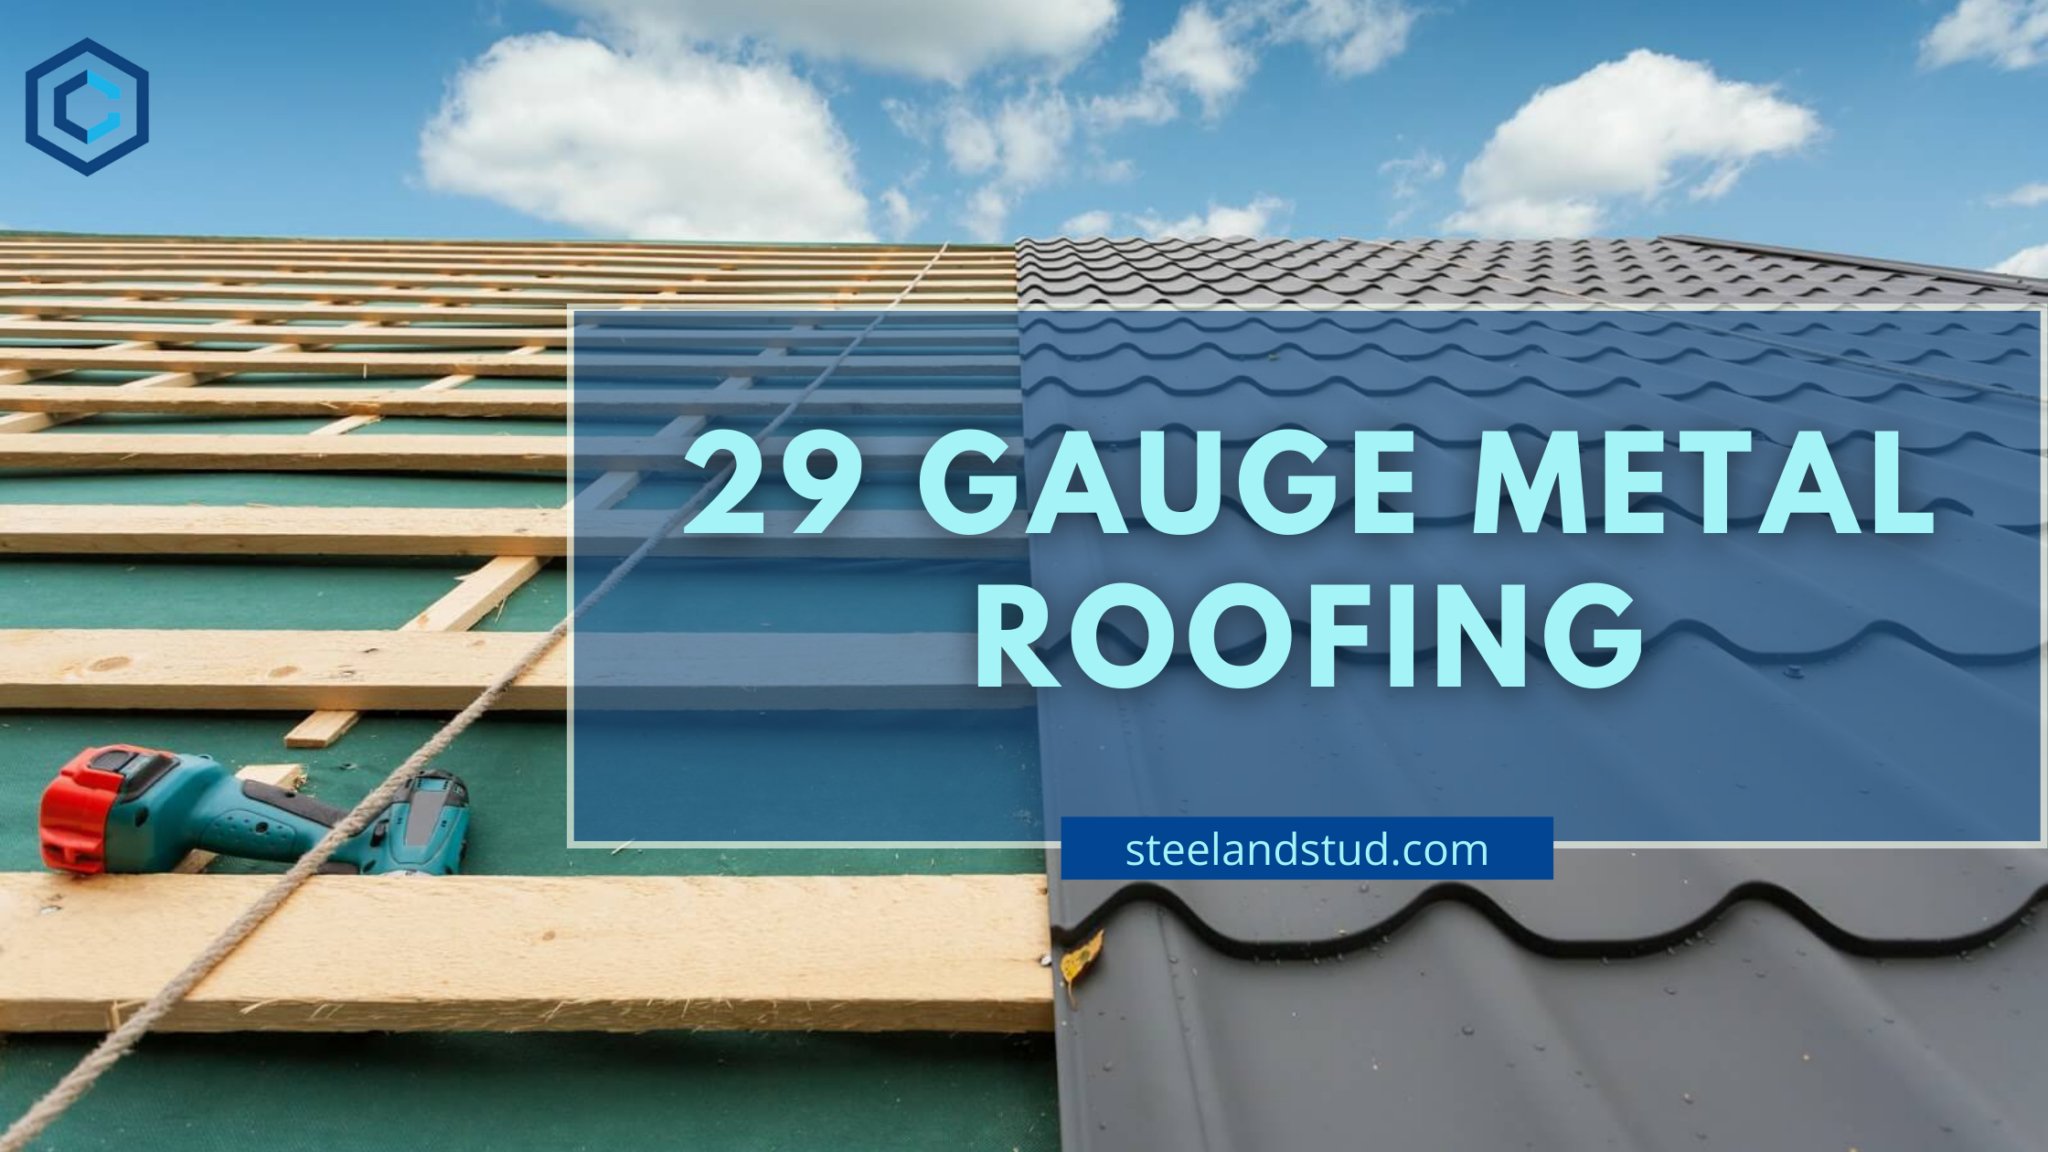 29-gauge-metal-roofing-steel-stud